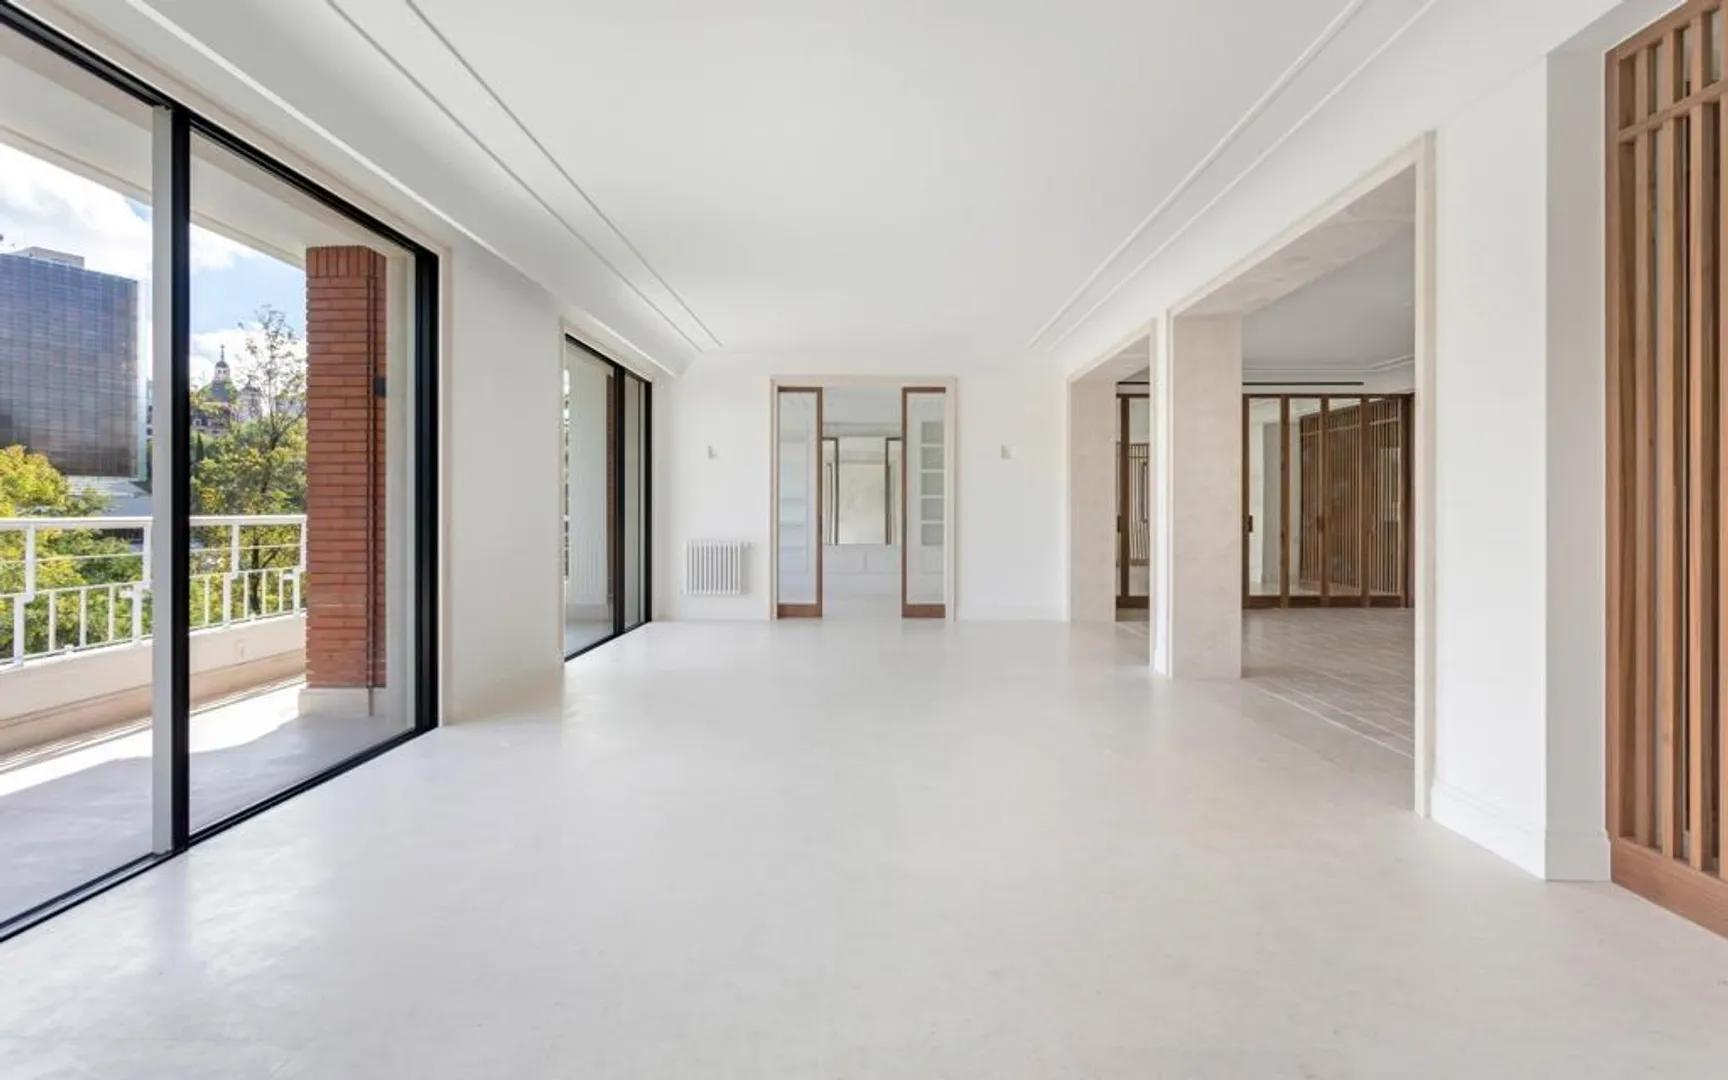 Piso en venta de 672m2 y 4 dormitorios en Paseo de la Castellana, Almagro, Madrid. III